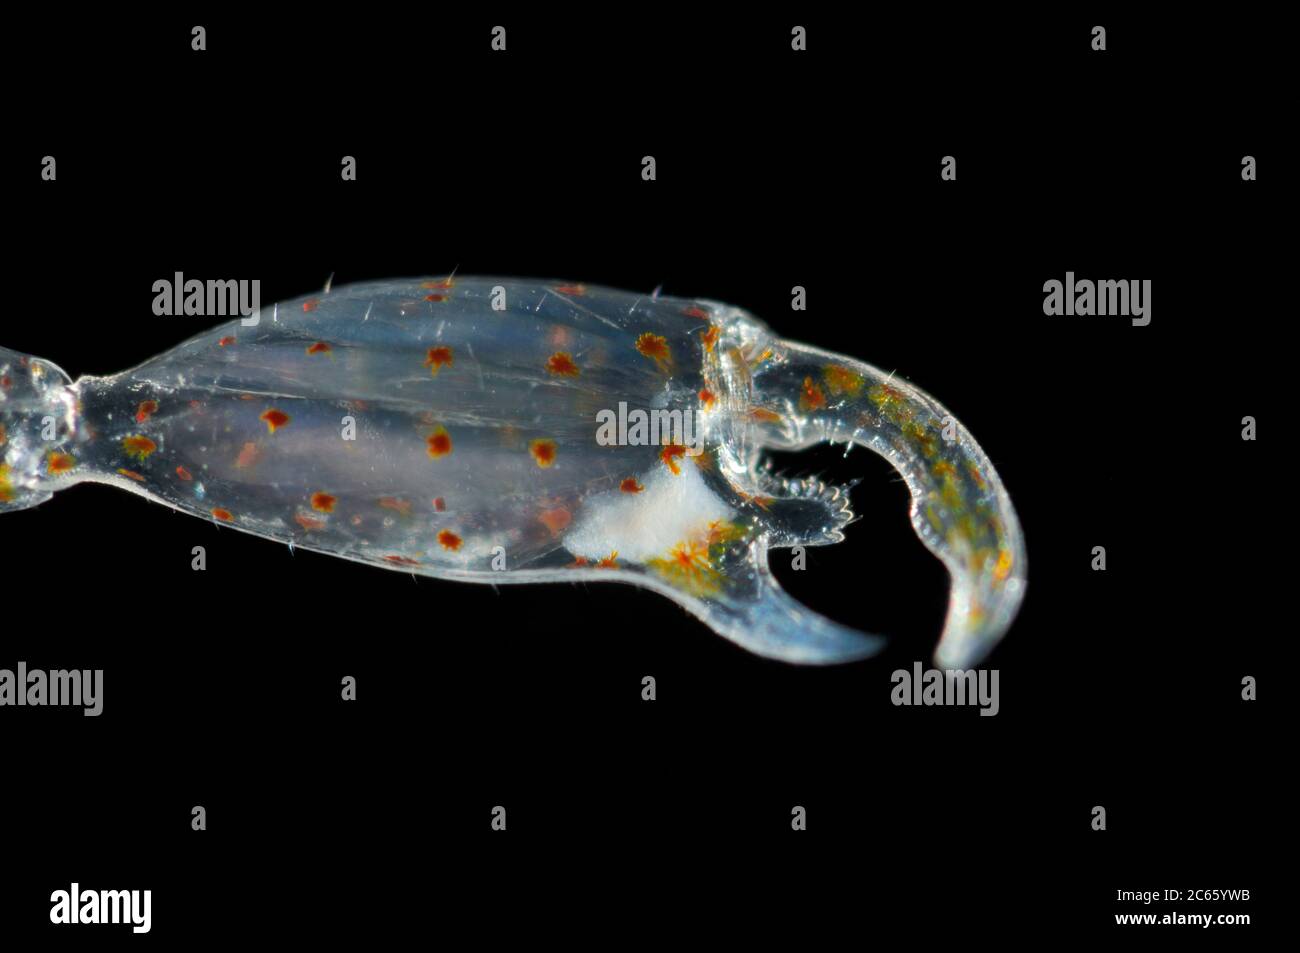 Le pincer ou les clawes de Phronima, l'amphipode de punaises, est un petit amphipode hypériïde translucide de la famille des Phronimidae. Bras à clawed. Phronima sont vus seulement dans la nature à de grandes profondeurs, [taille d'un seul organisme: 2,5 cm] Banque D'Images